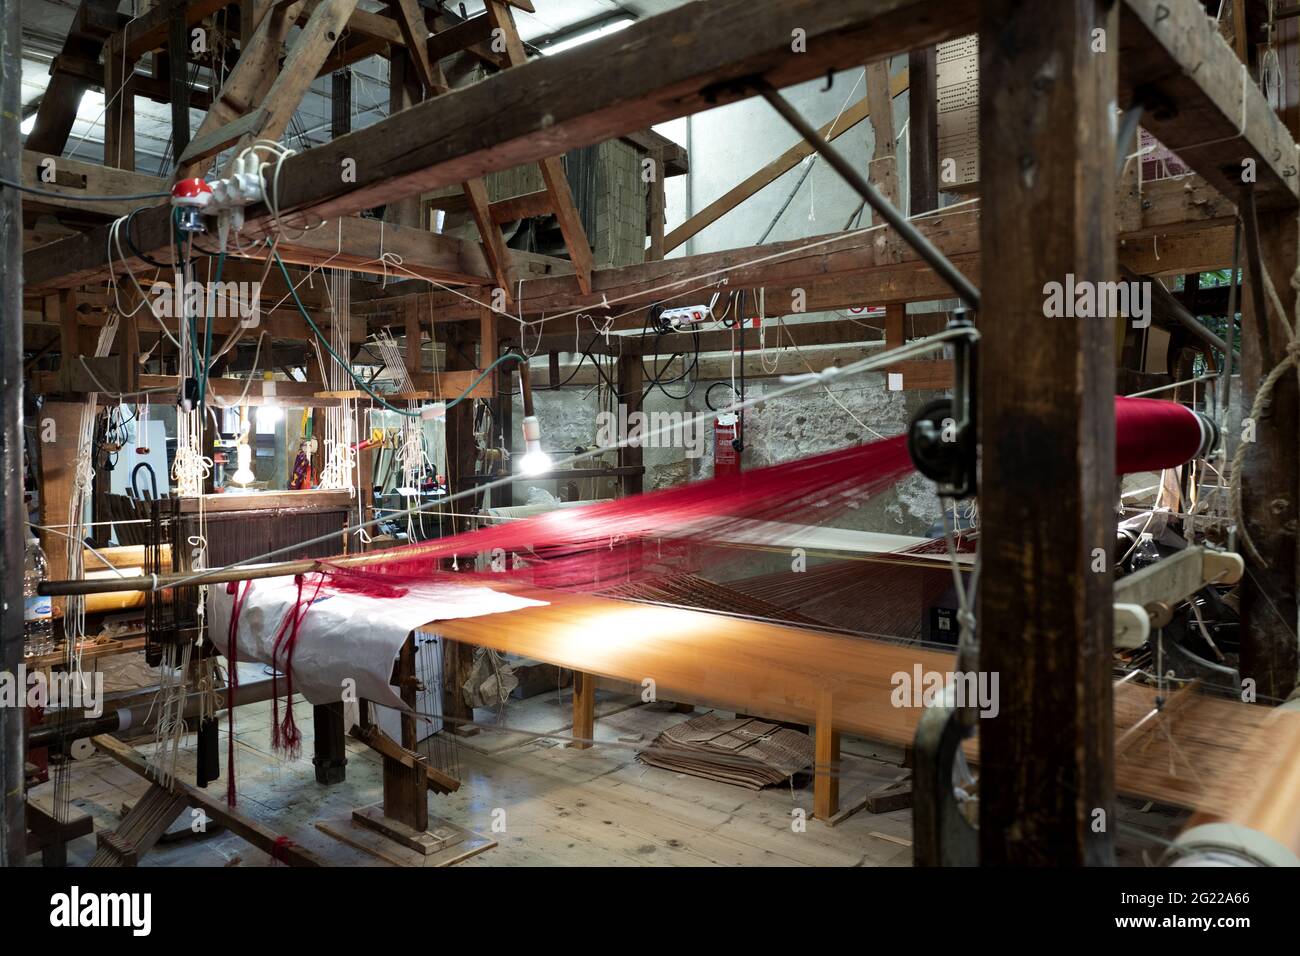 Les tisserands en bois d'époque des tisserands de Bevilacqua produisent du textile de luxe à Venise depuis 1875. Banque D'Images